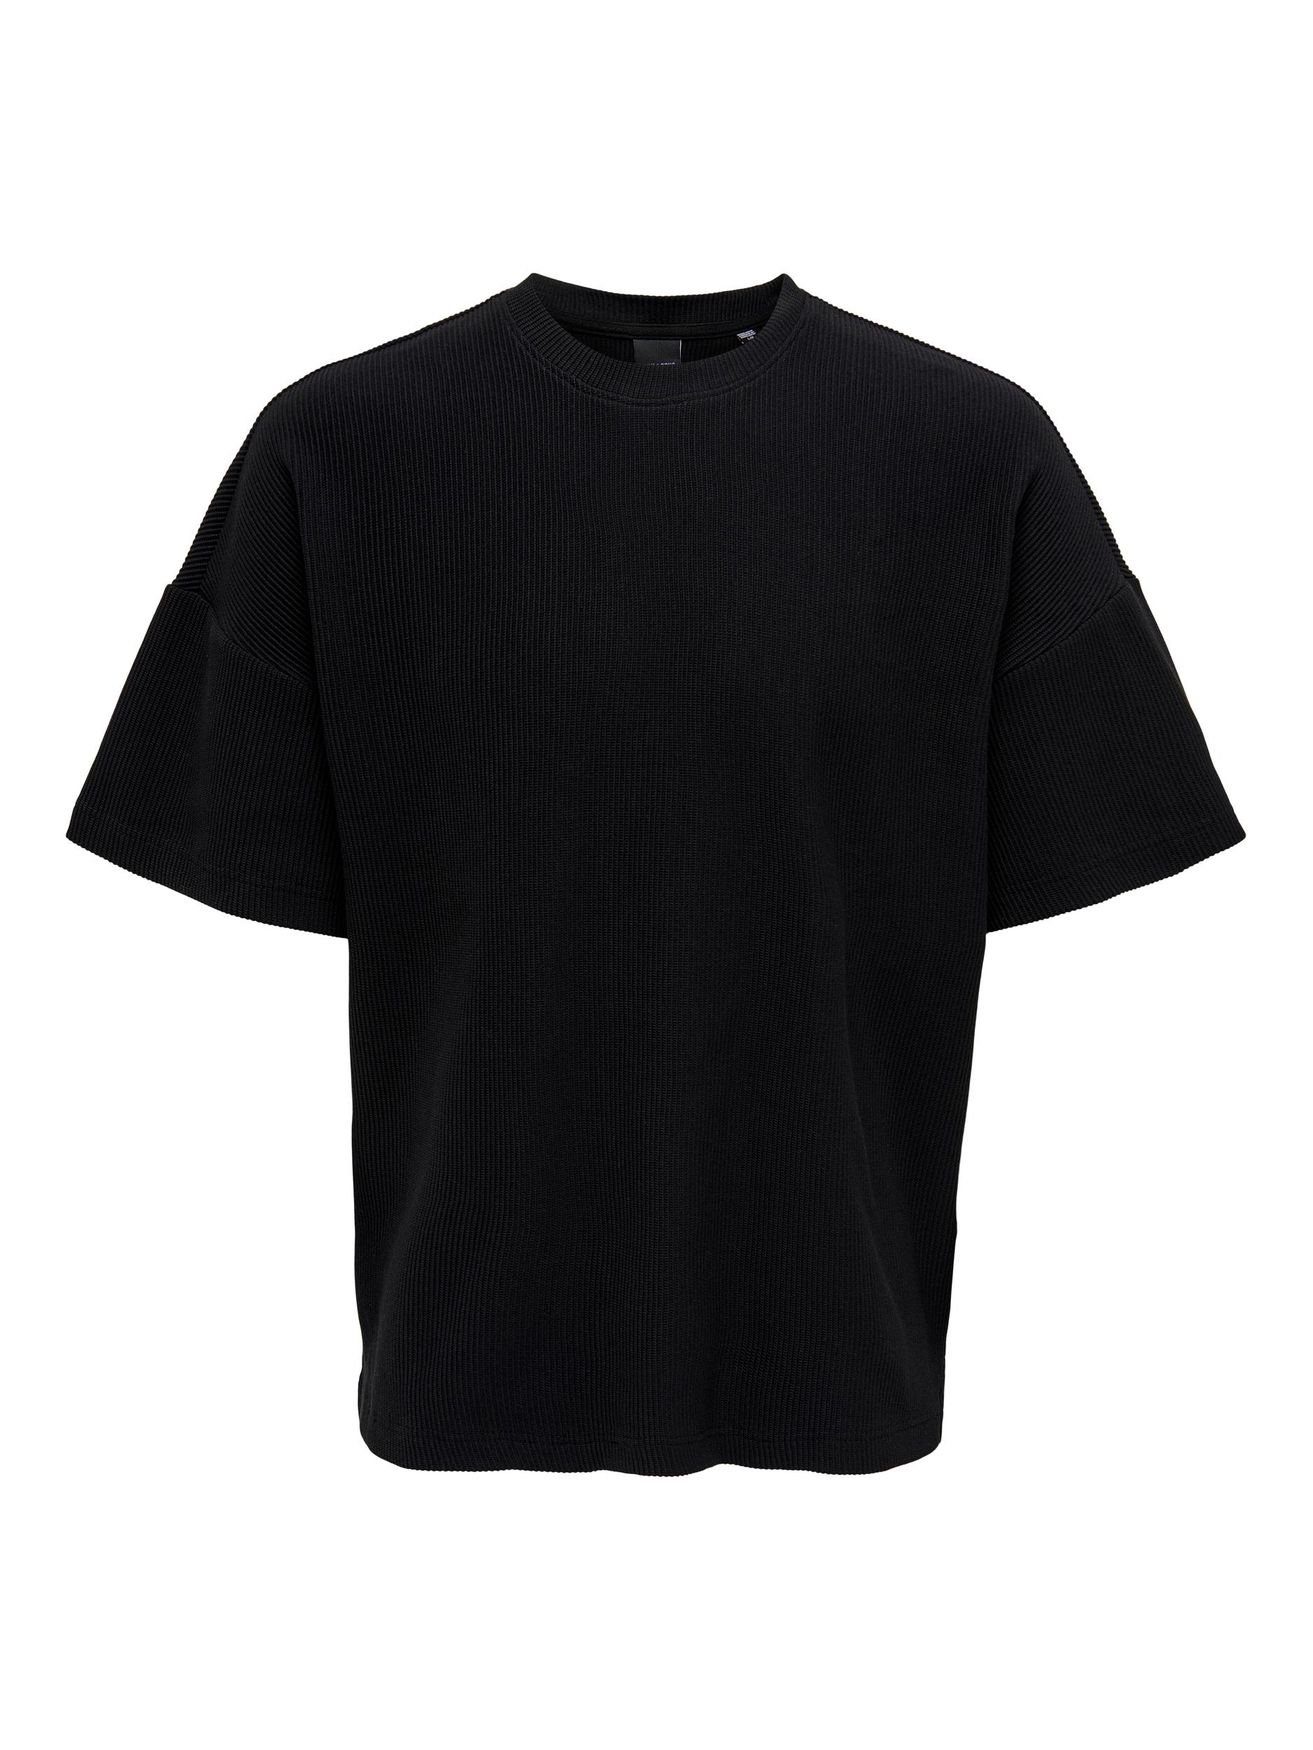 ONLY & SONS T-Shirt Weites Rundhals T-Shirt Kurzarm Basic Shirt ONSBERKELEY 4791 in Schwarz